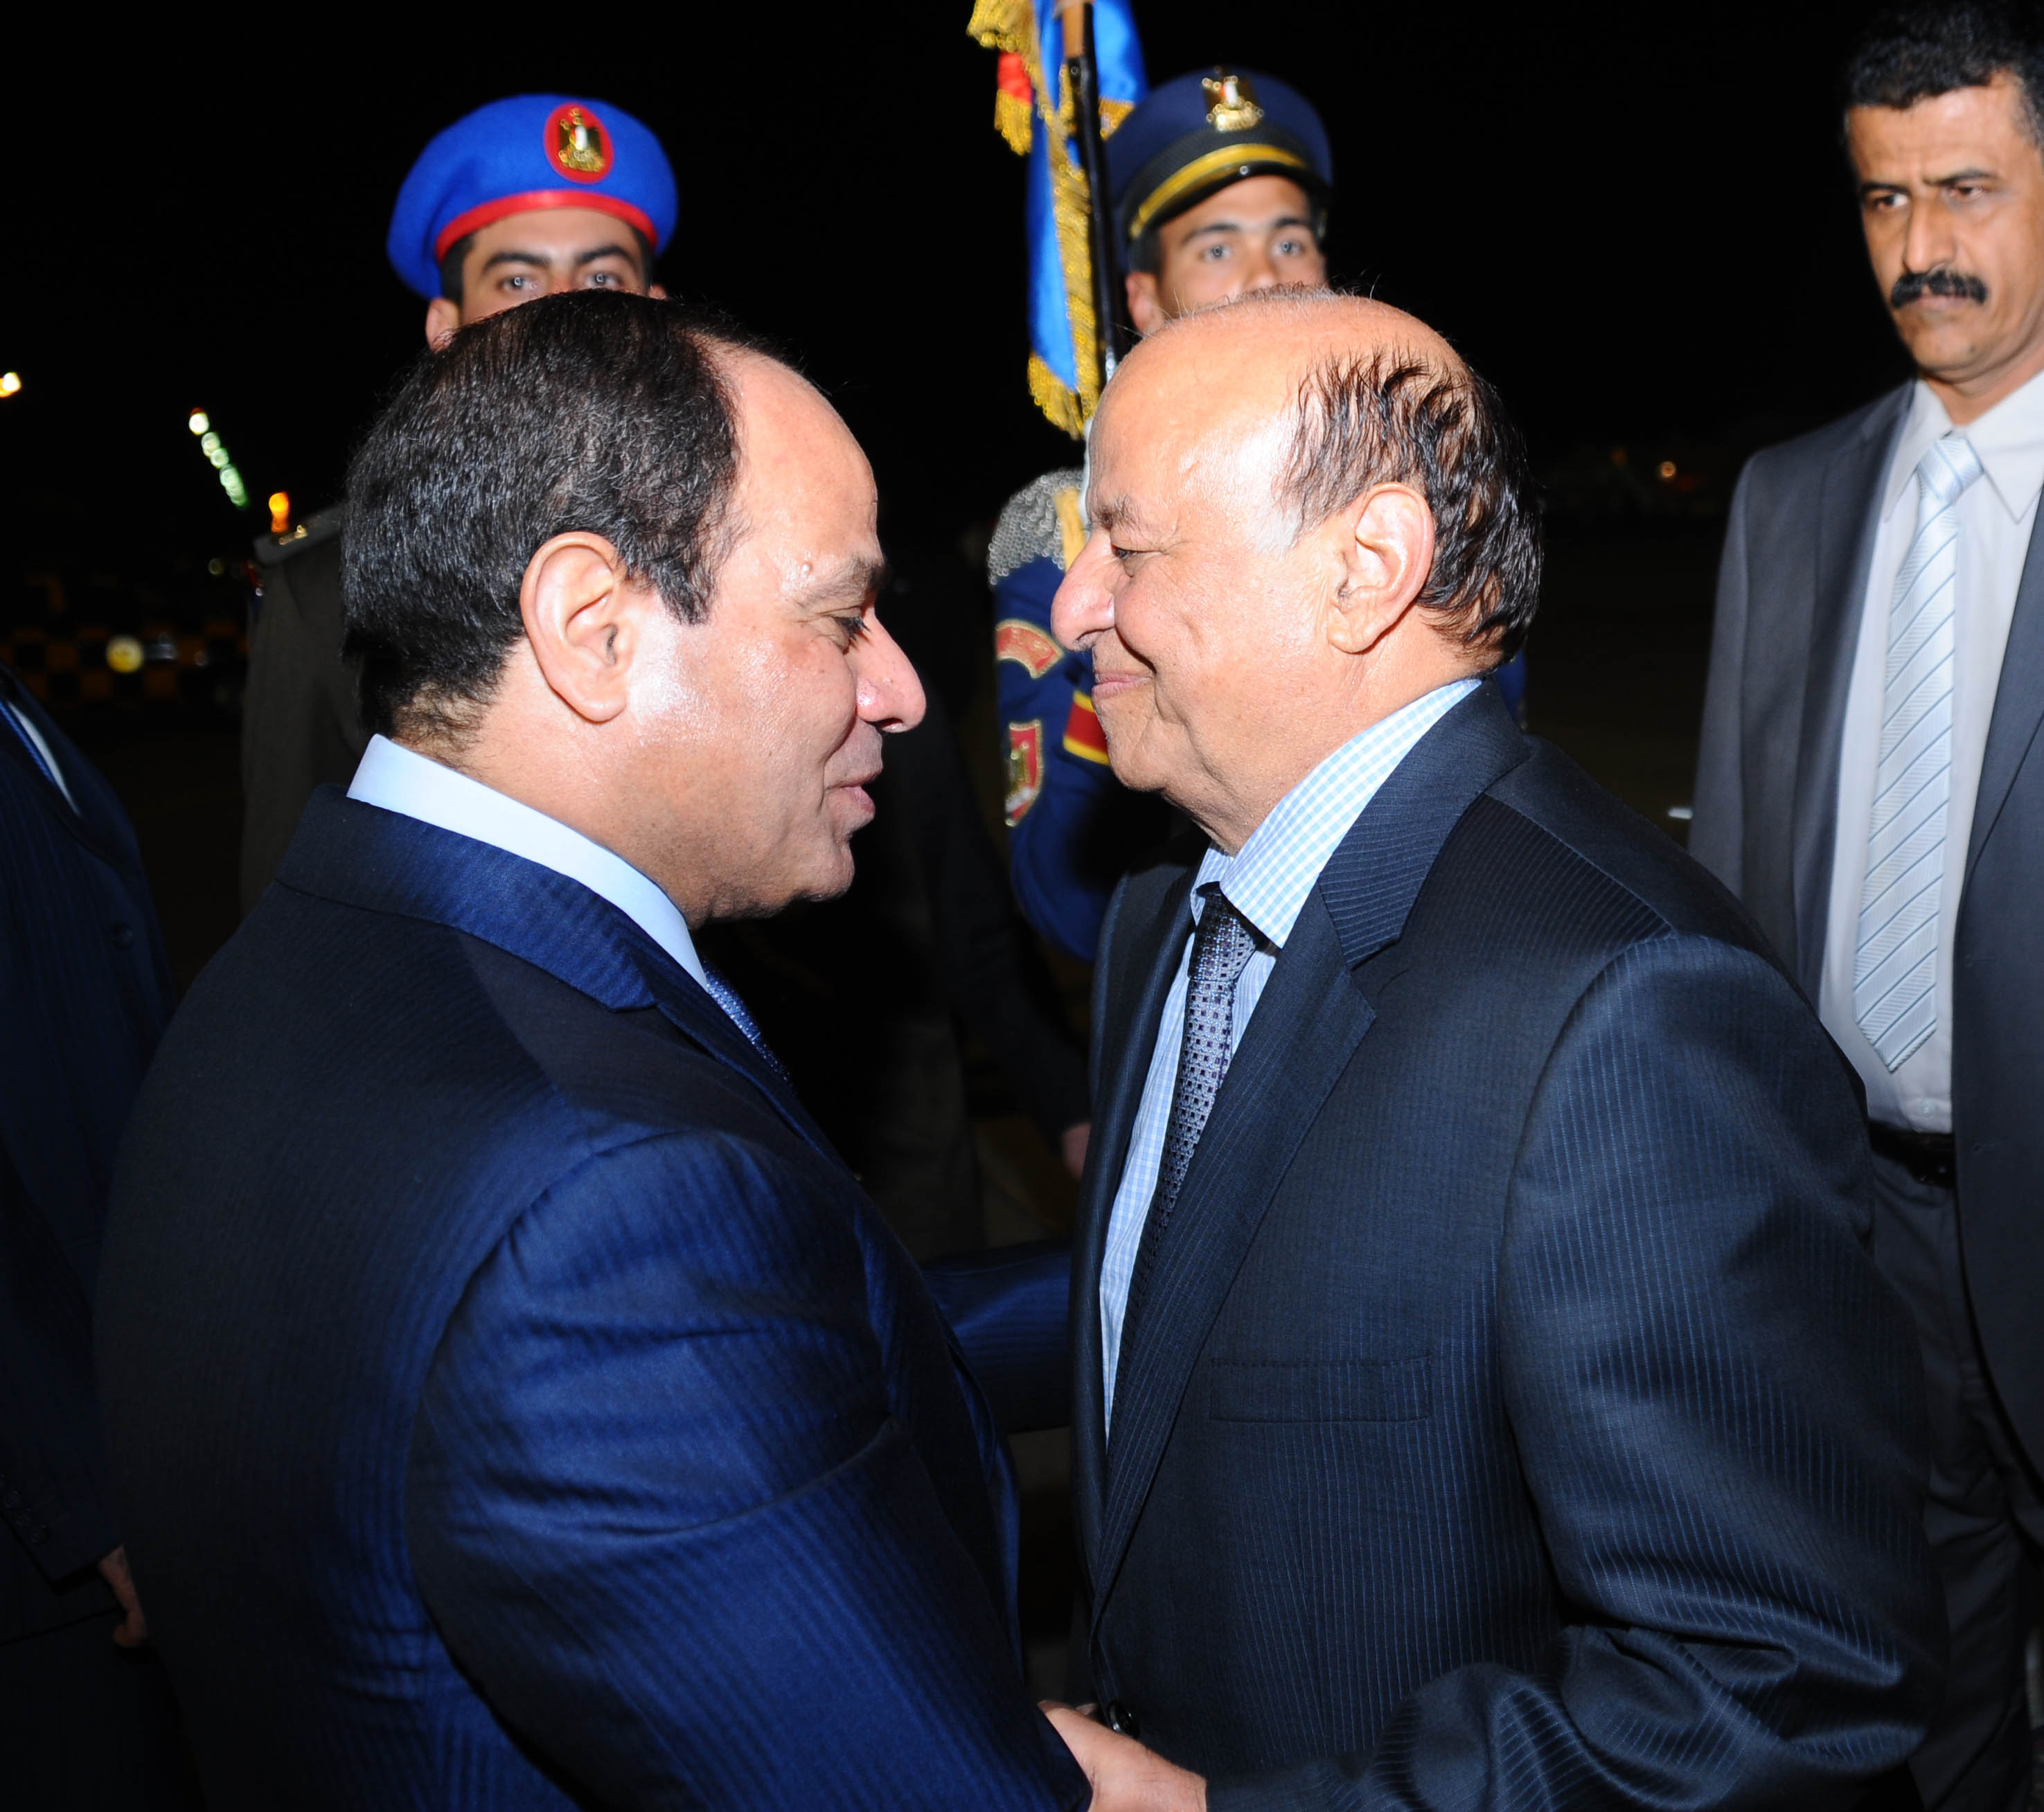 السيسي: مشاركة مصر في الحملة العسكرية باليمن تهدف للحفاظ على وحدته وسلامة أراضيه